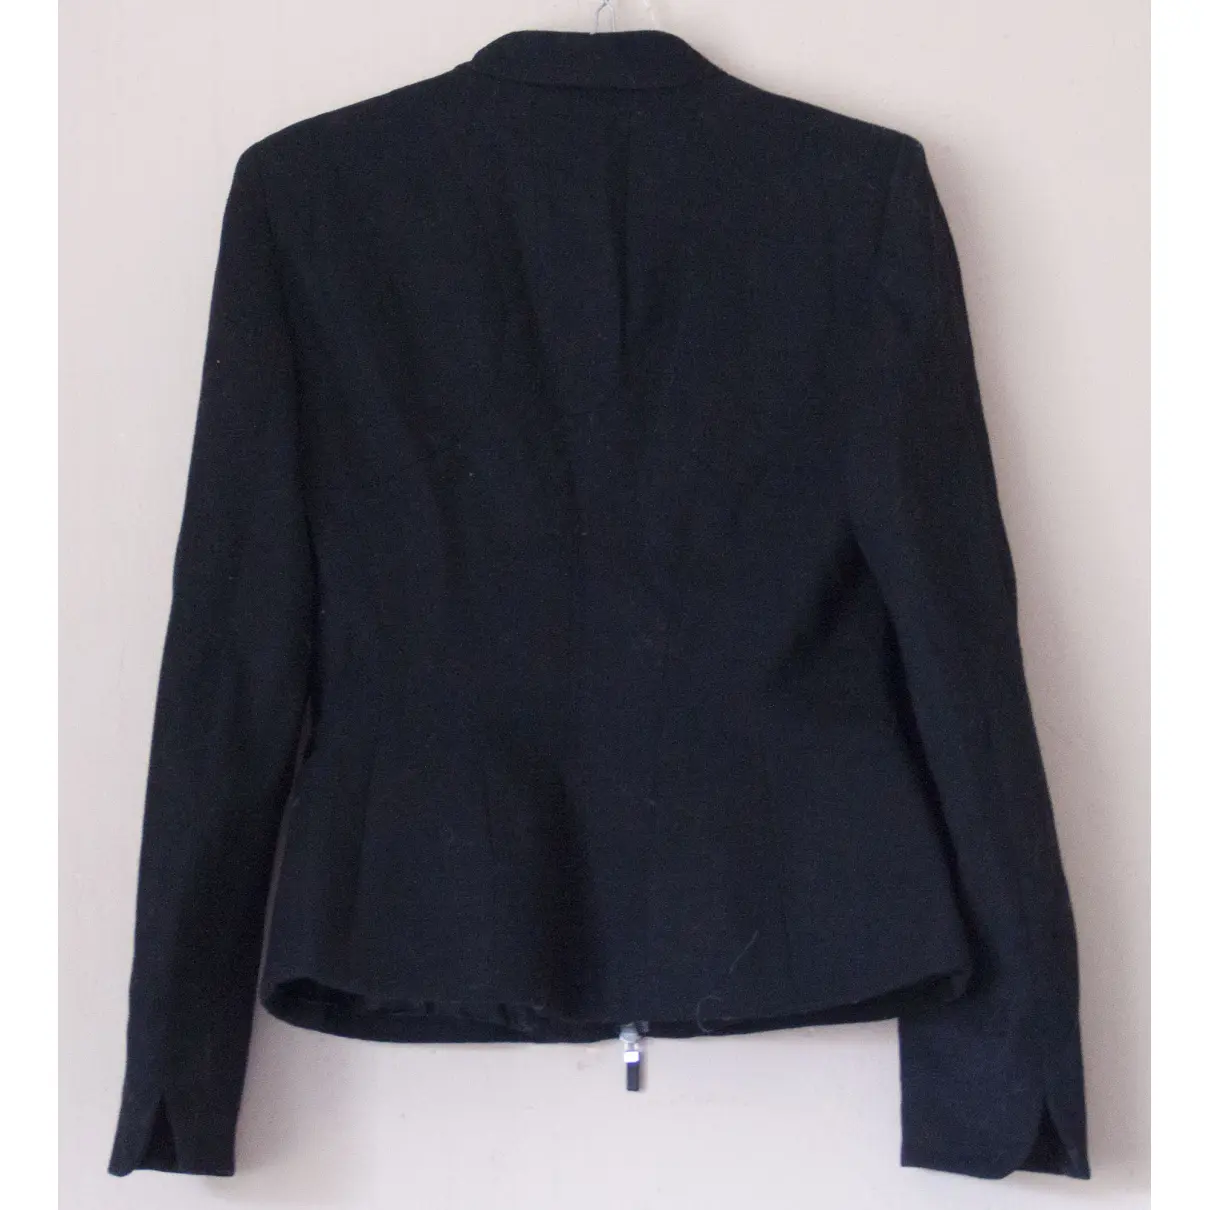 Buy Alexander McQueen Wool jacket online - Vintage